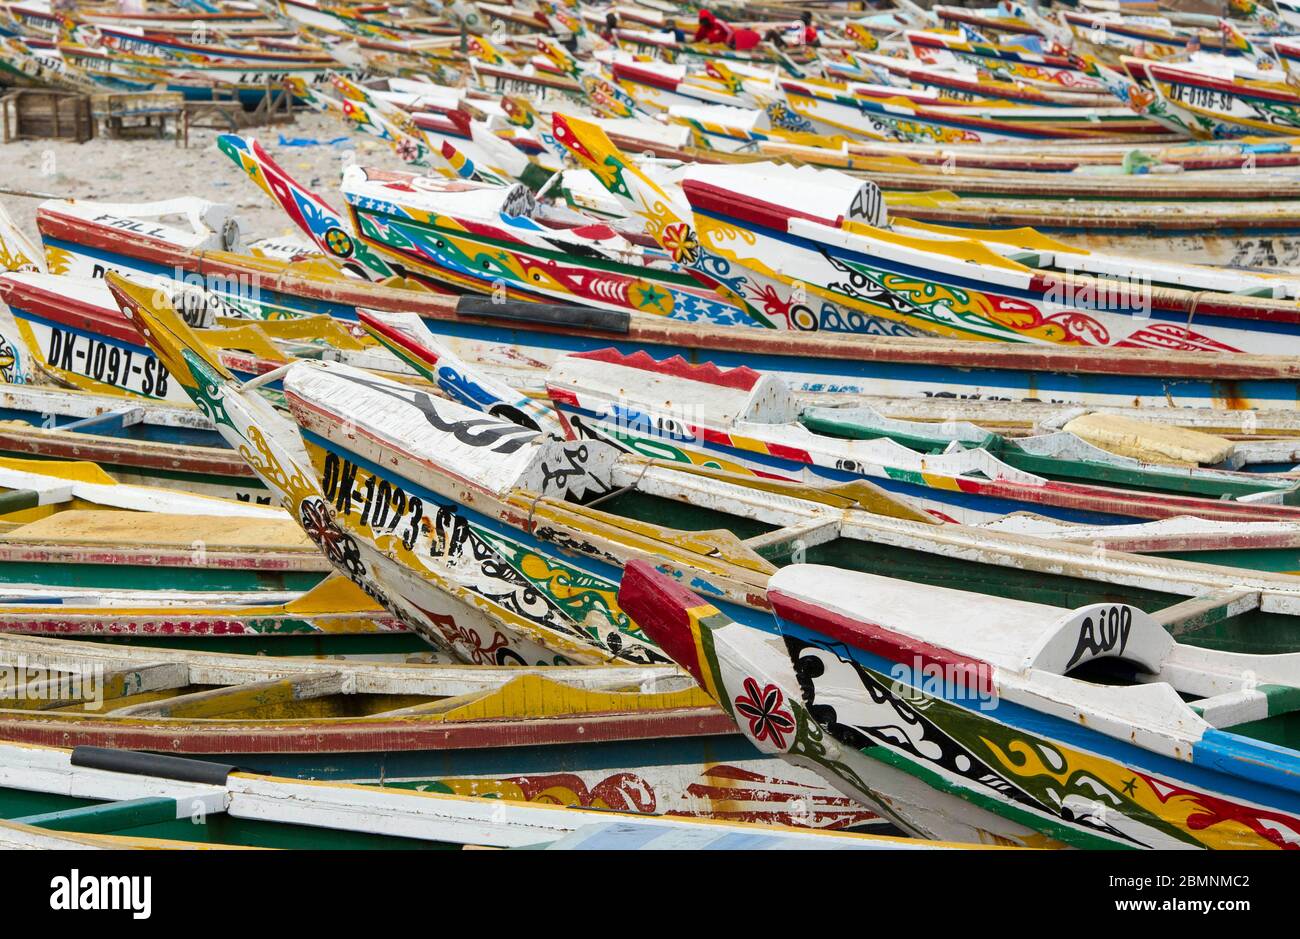 Bateaux de pêche sur la plage au marché de poissons du soumbedioune, Dakar, Sénégal, Afrique de l'Ouest. Banque D'Images